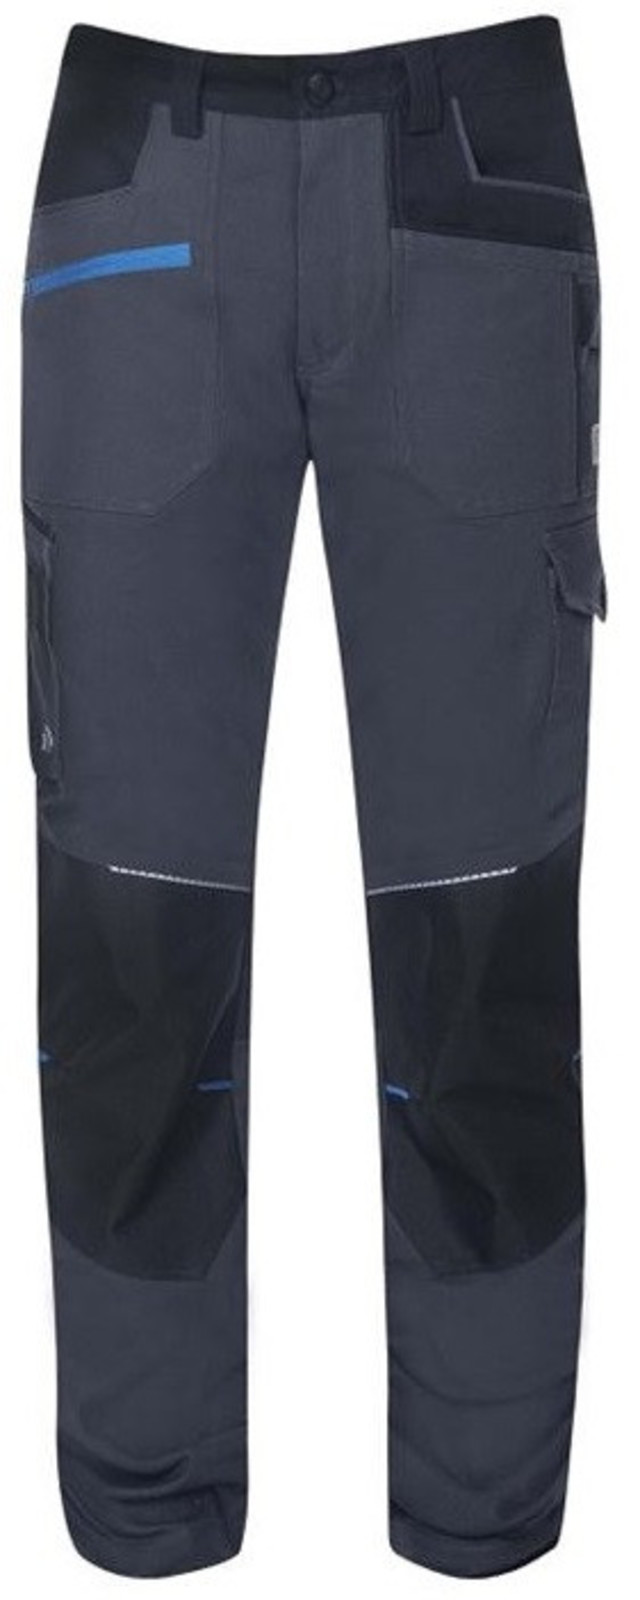 Detské strečové nohavice Ardon 4Xstretch - veľkosť: 98/104, farba: tmavo šedá